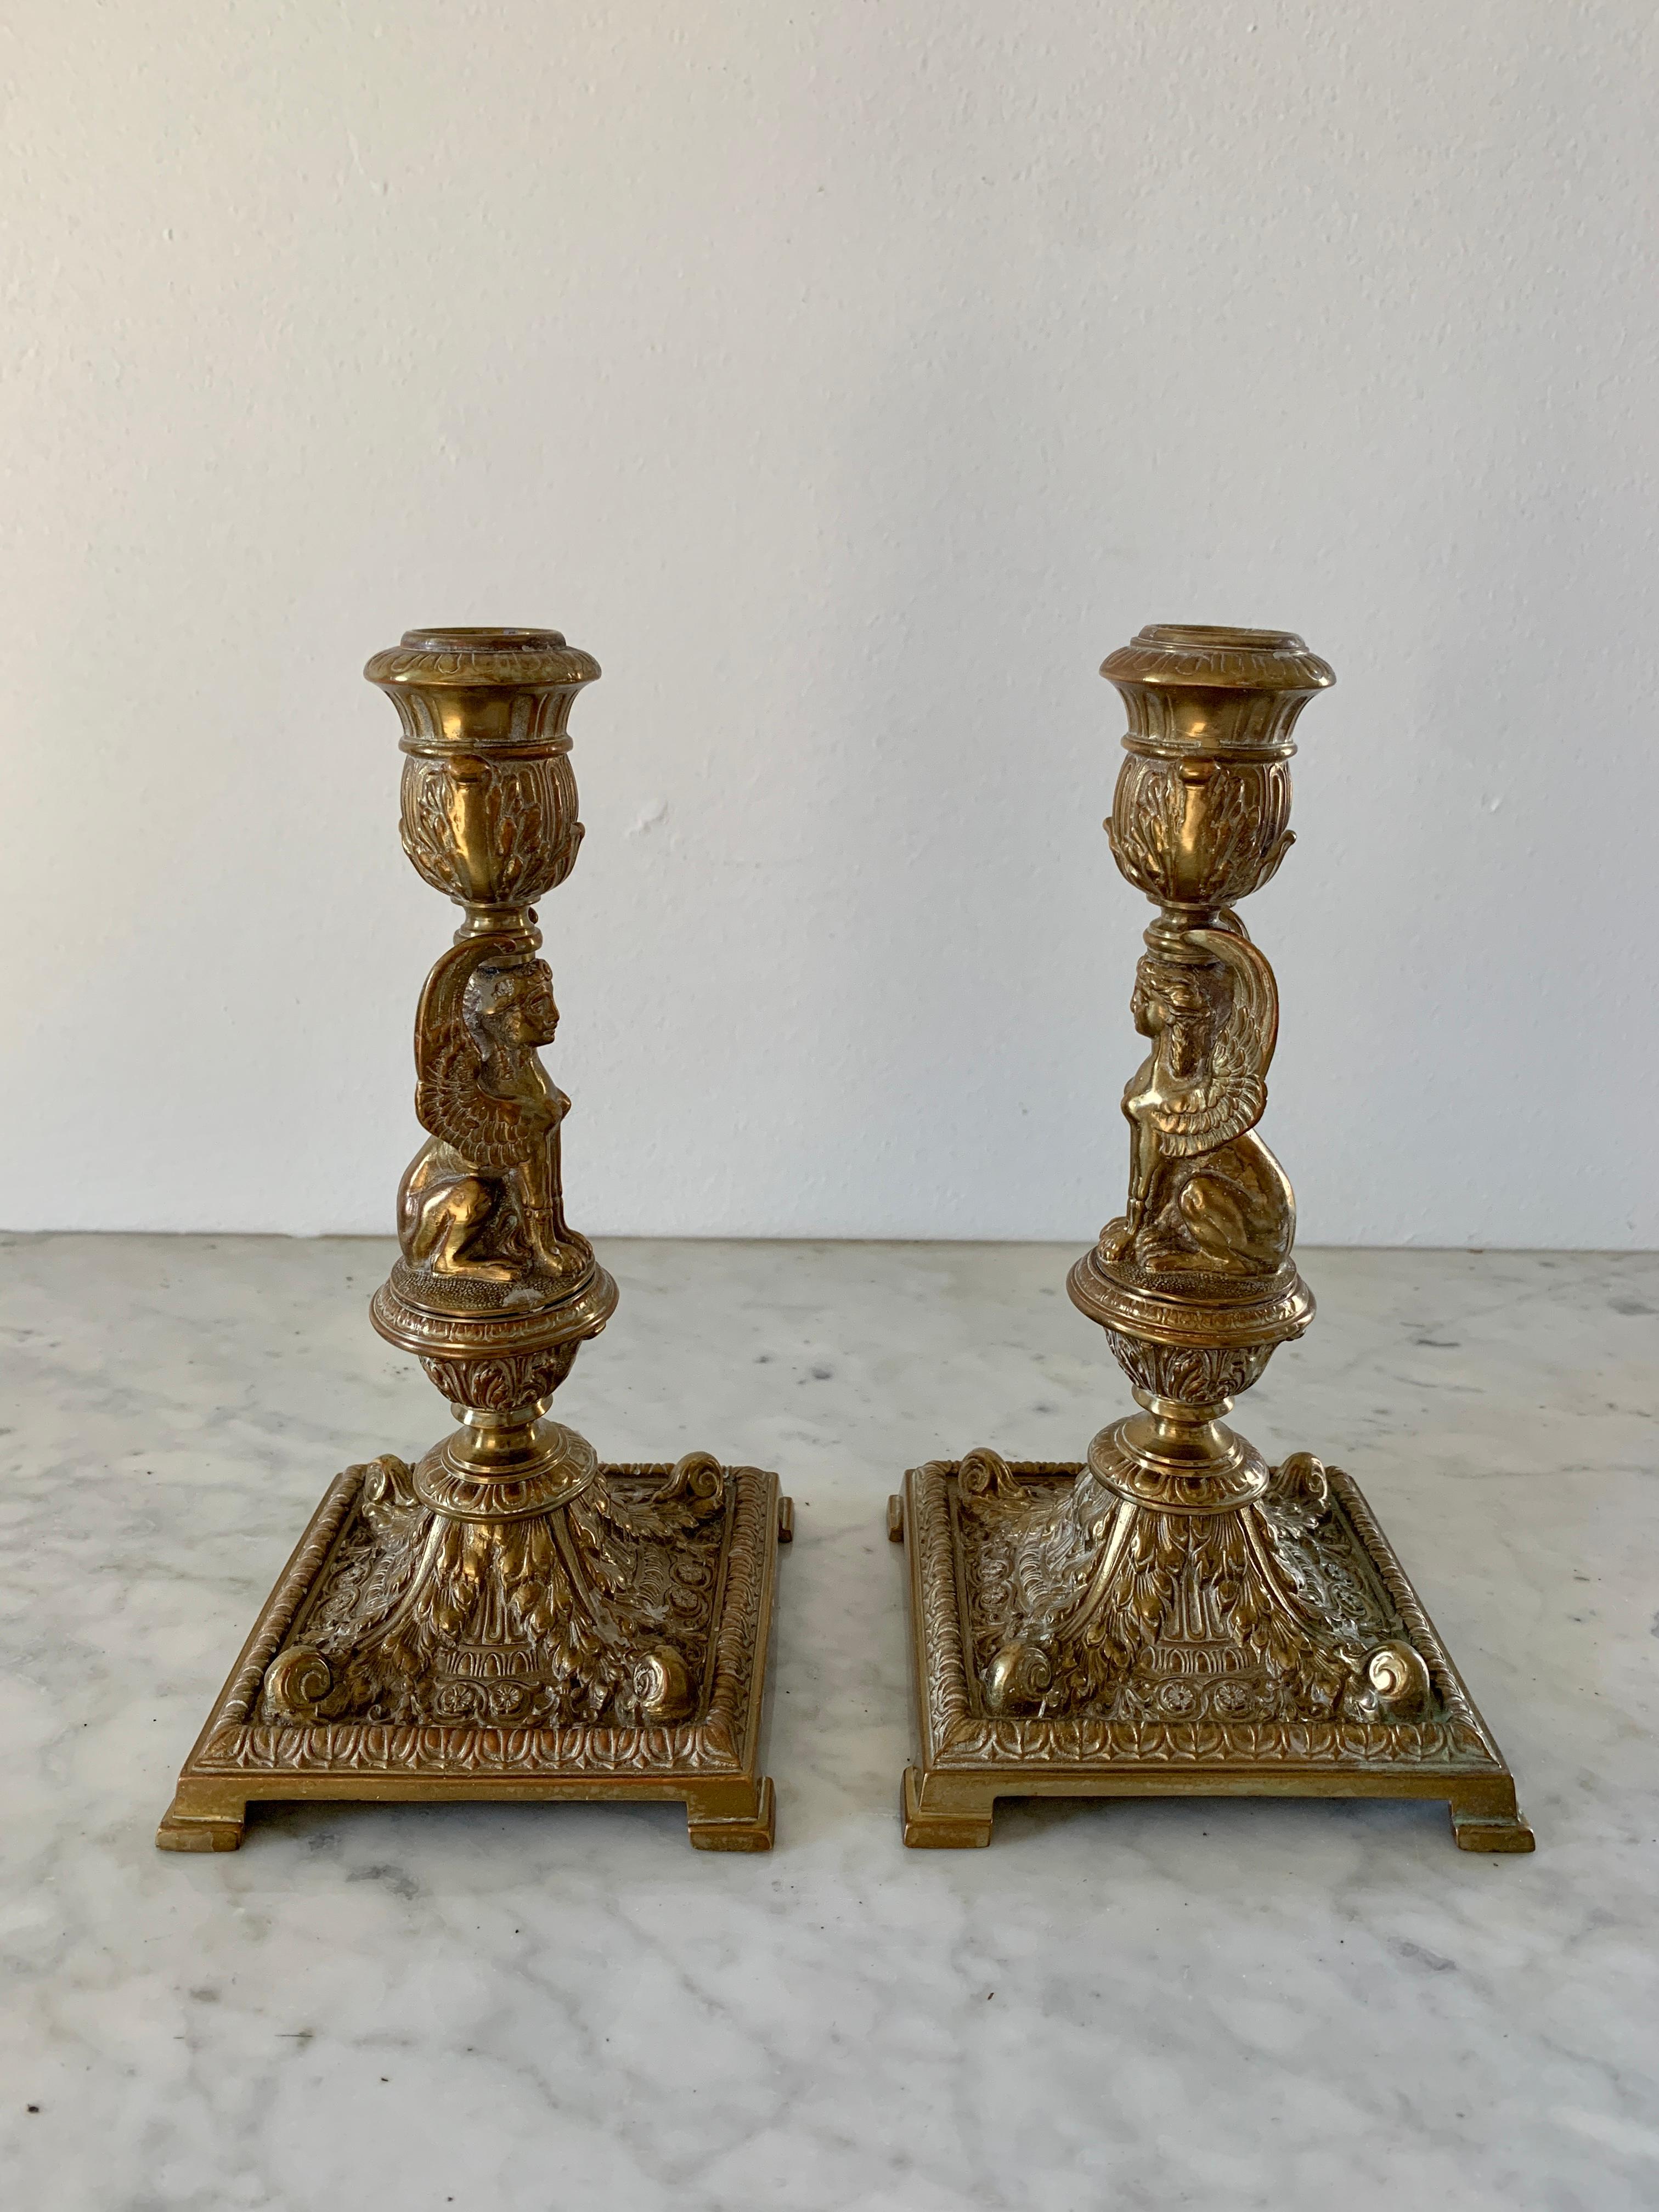 Ein wunderschönes Paar vergoldeter bronzener Kerzenhalter aus der Ägyptischen Wiedergeburt mit Sphinxen als Motiv.

Ende 19. Jahrhundert

Maße: 4,88 